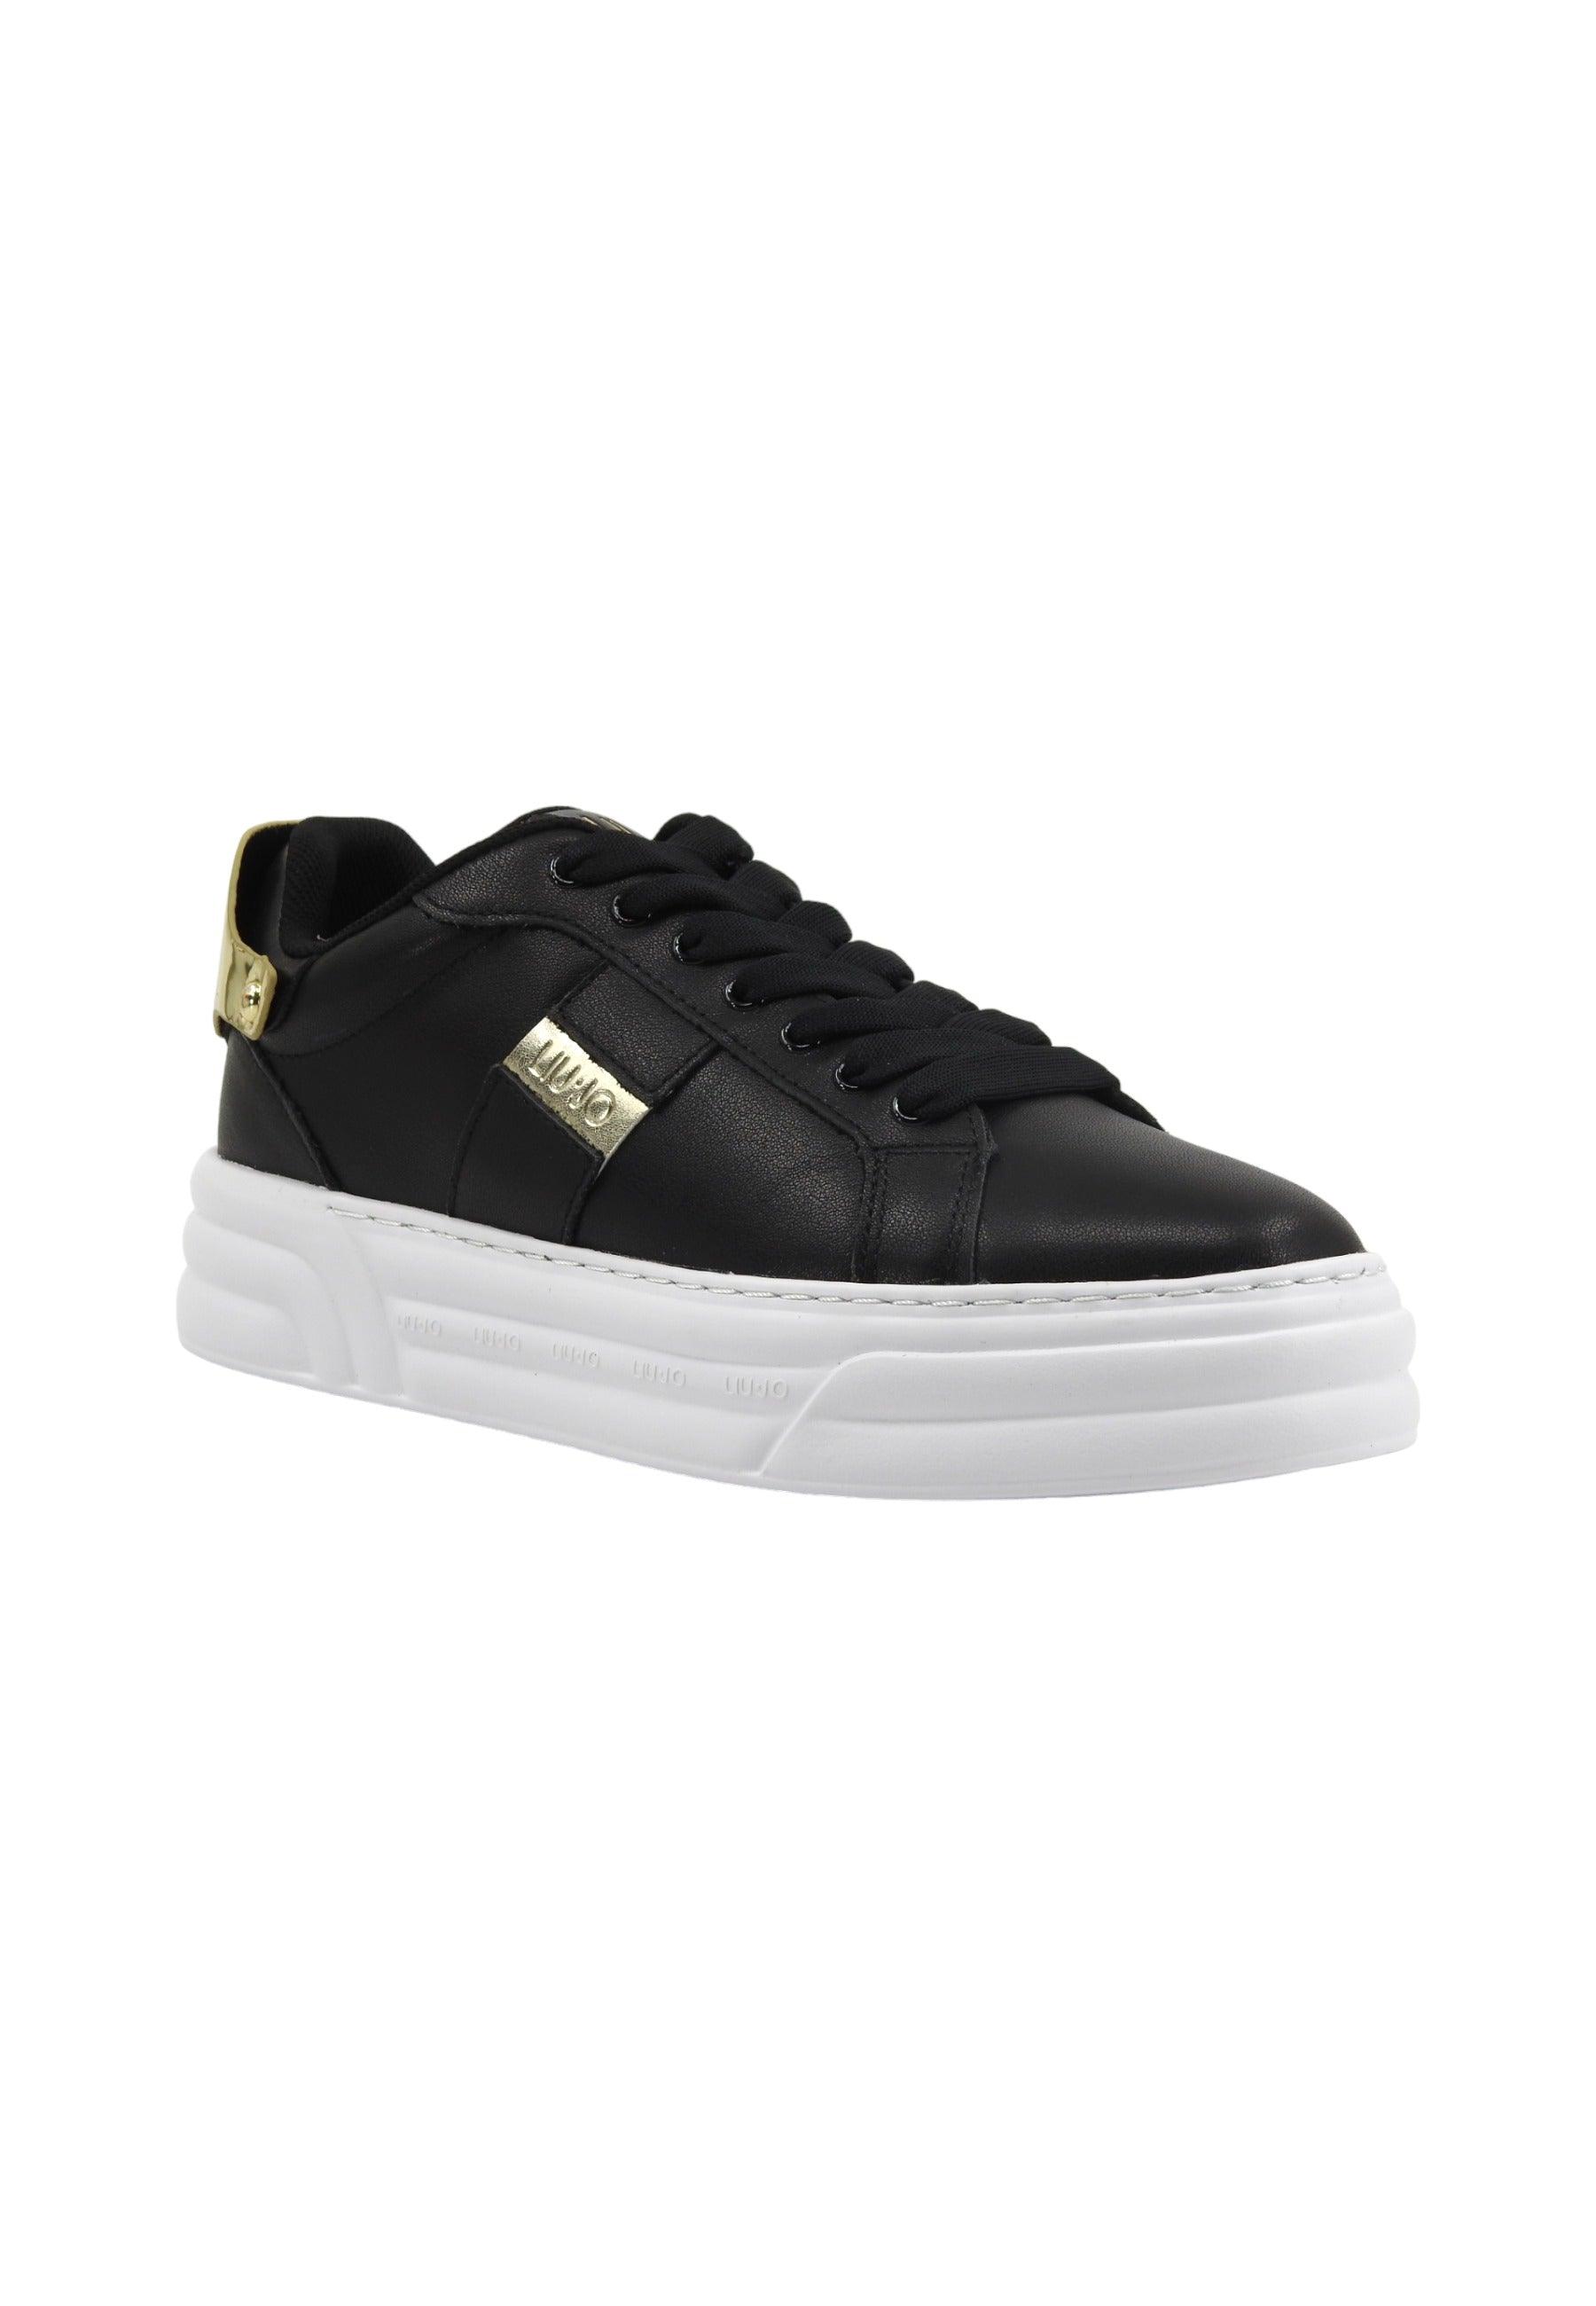 LIU JO Cleo 29 Sneaker Donna Black Gold BA4017PX179 - Sandrini Calzature e Abbigliamento